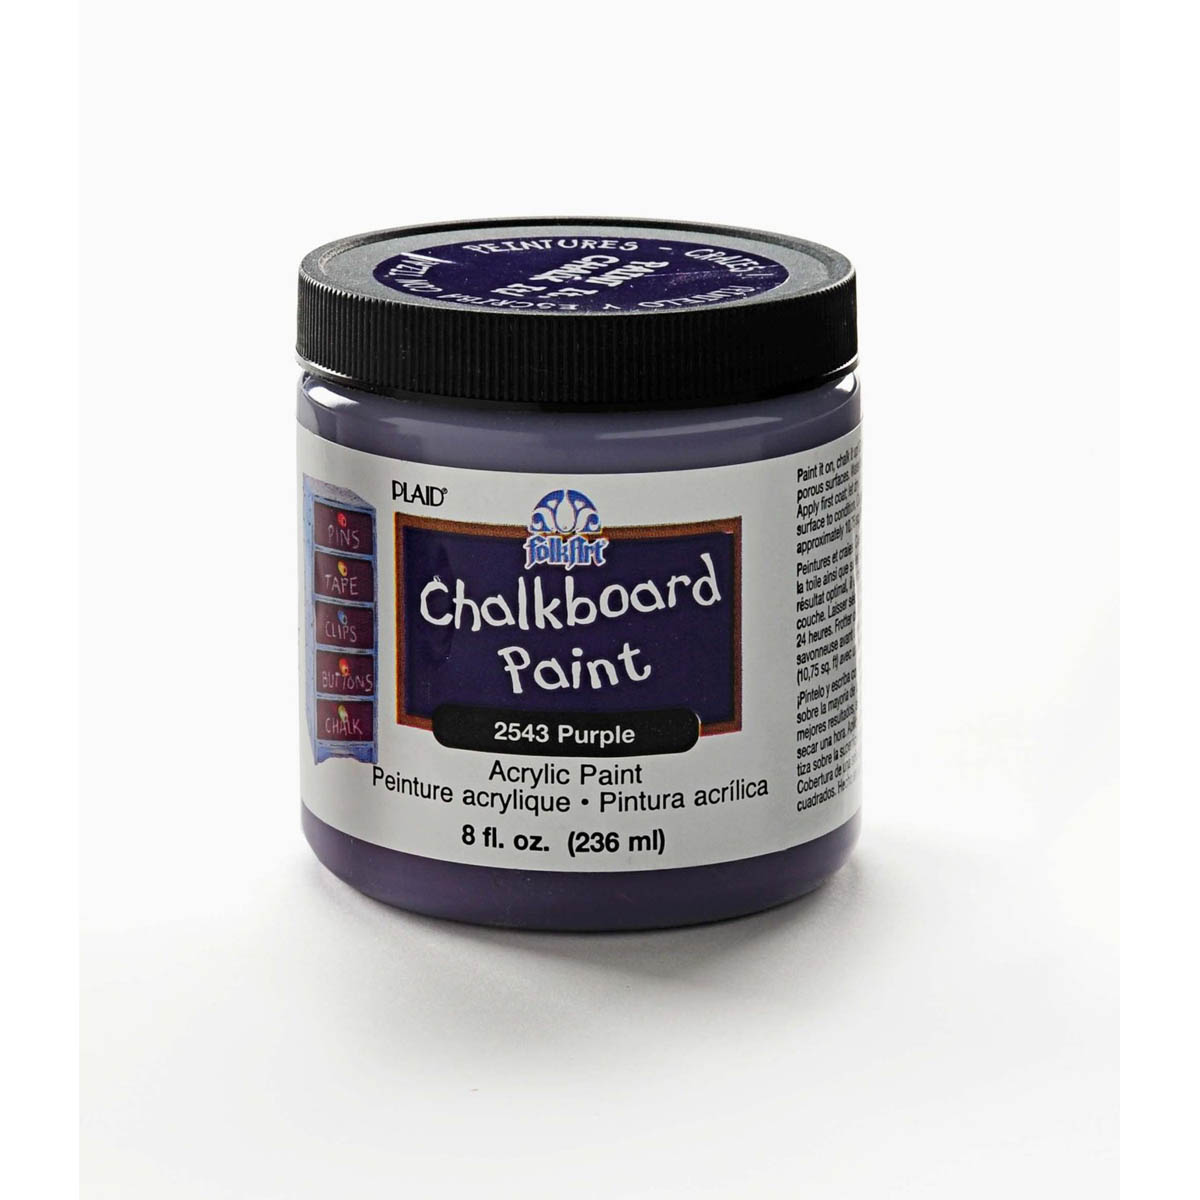 FolkArt ® Chalkboard Paint - Purple, 8 oz. - 2543